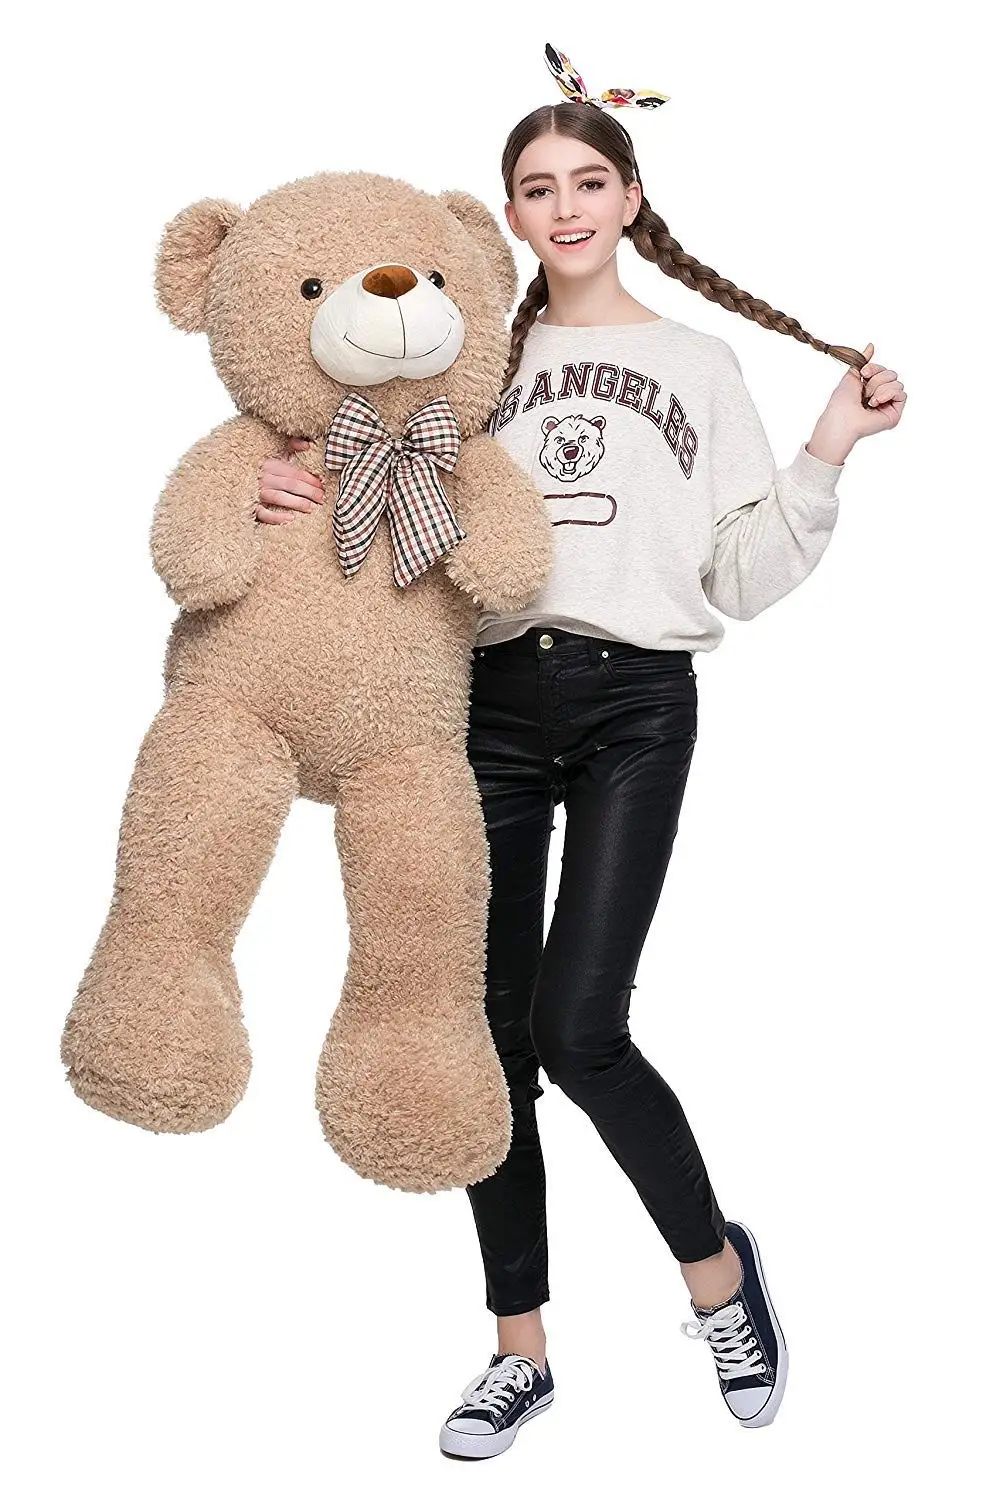 40 inch teddy bear